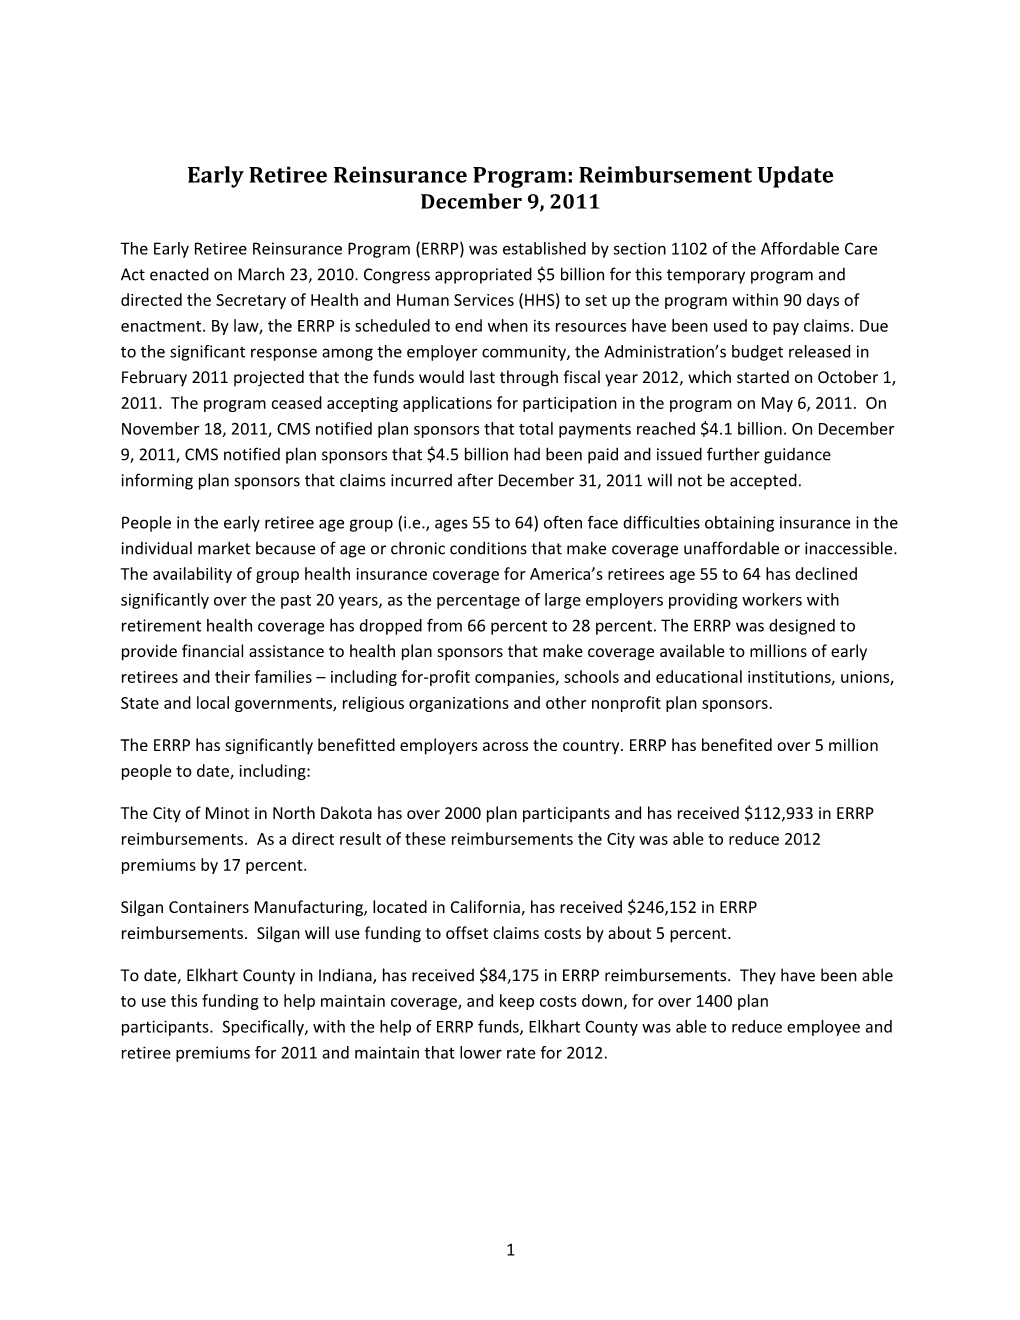 Early Retiree Reinsurance Program: Reimbursement Update, December